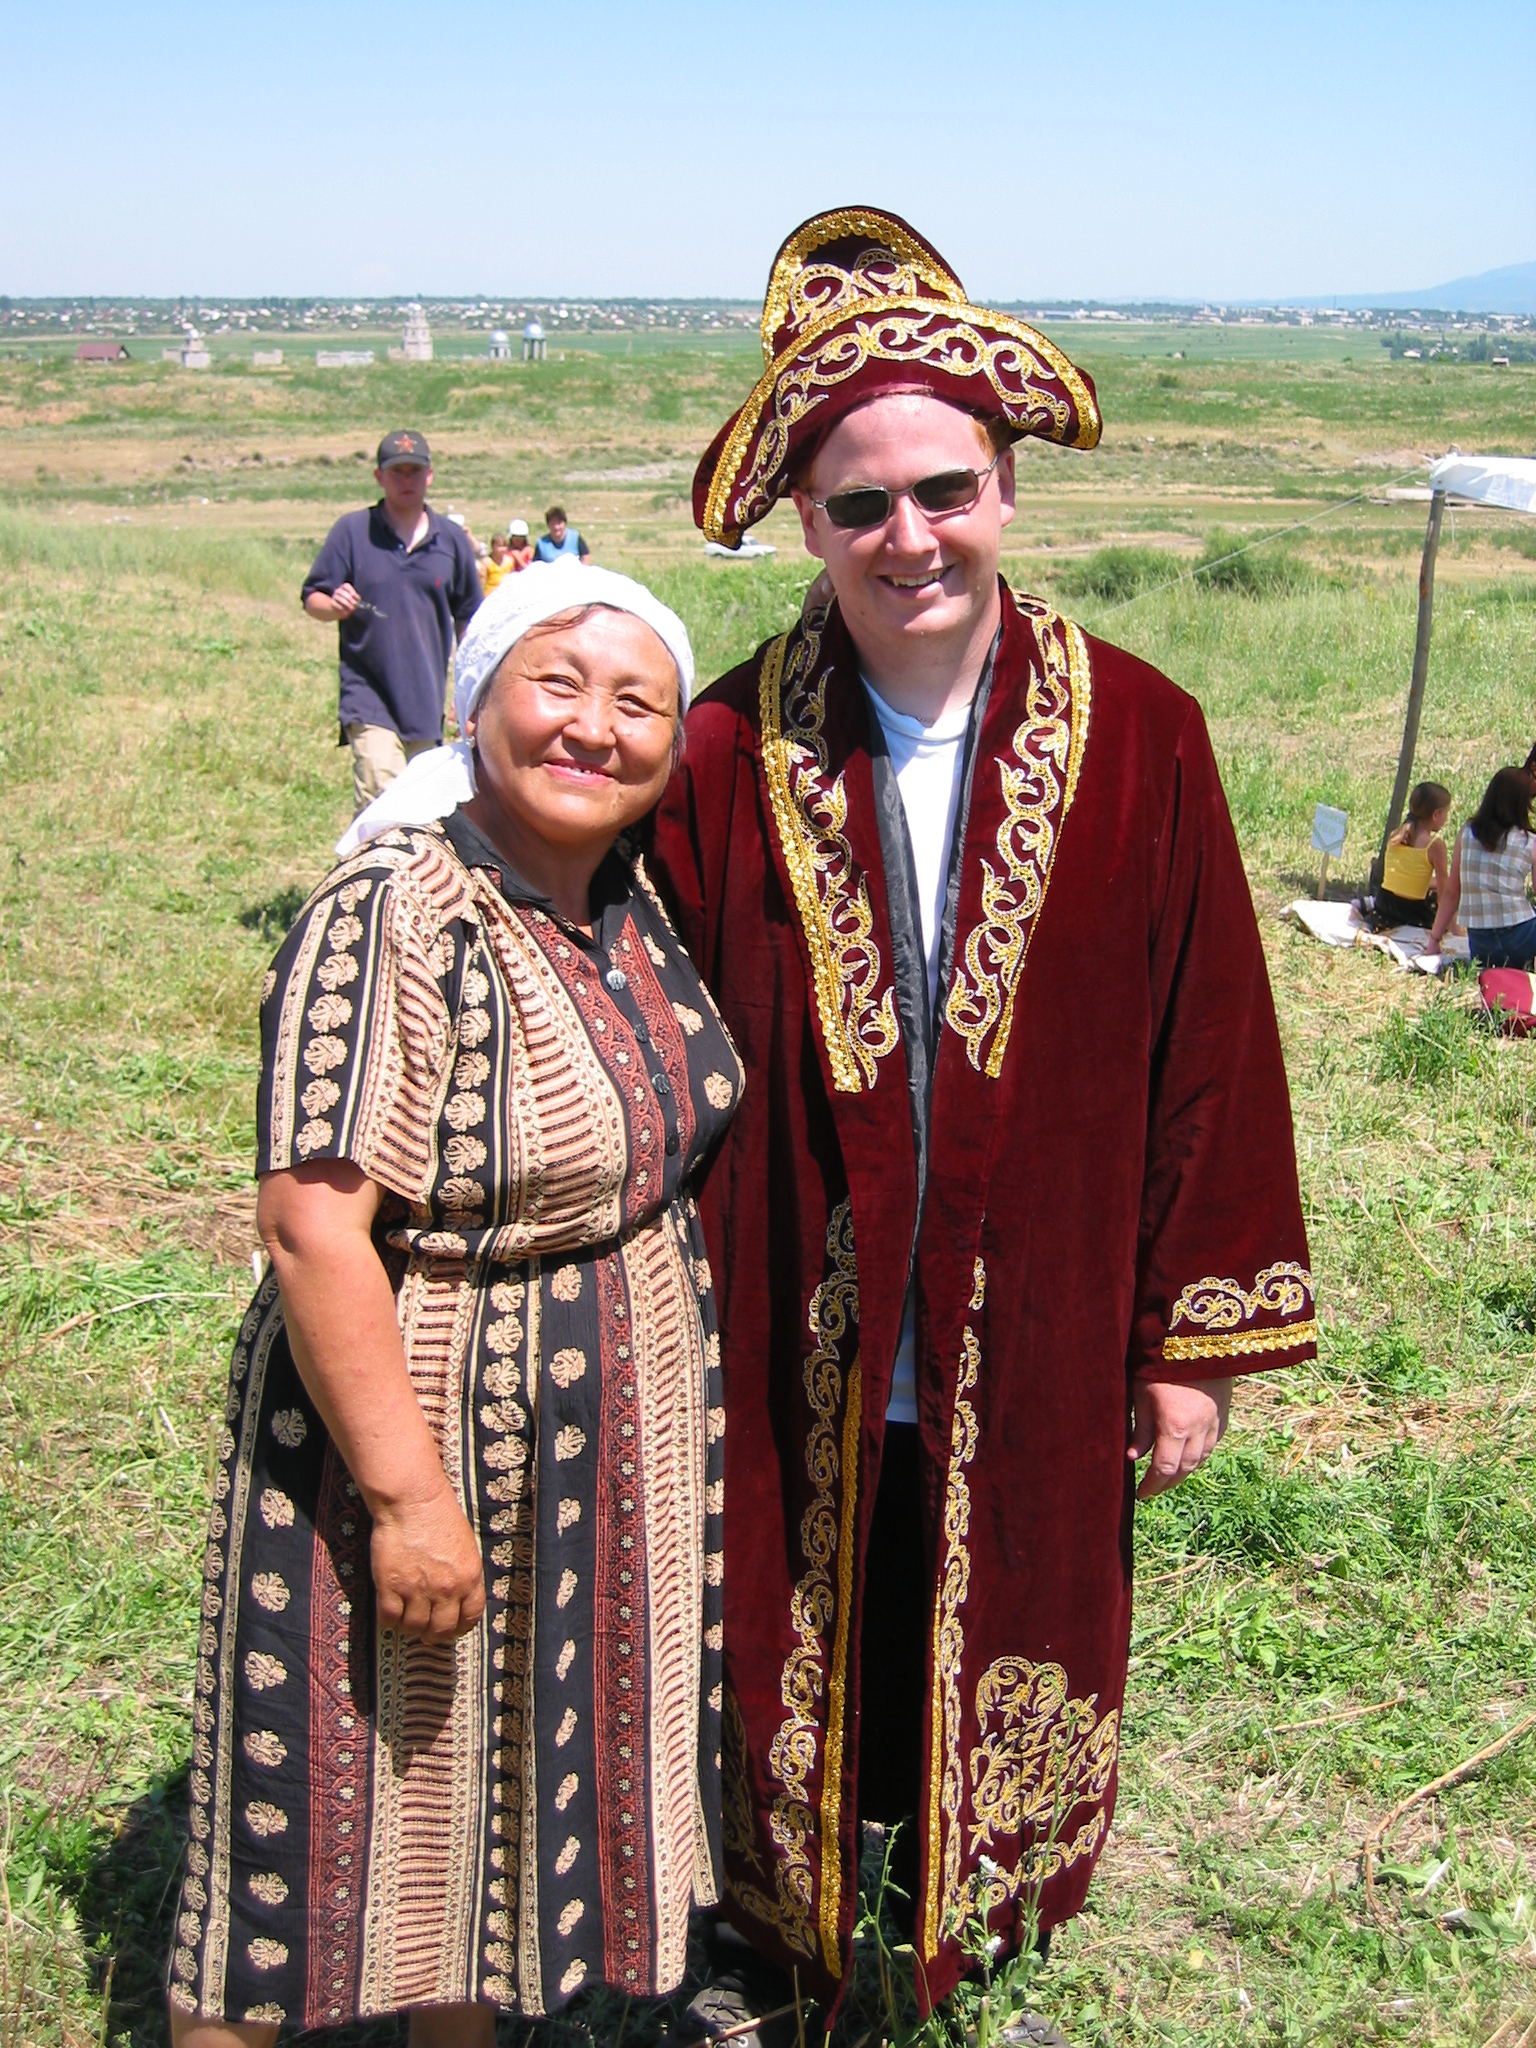 Kazakh people. Национальная одежда Казахстана. Национальная одежда казахов. Одежда народов степей. Традиционная казахская одежда.